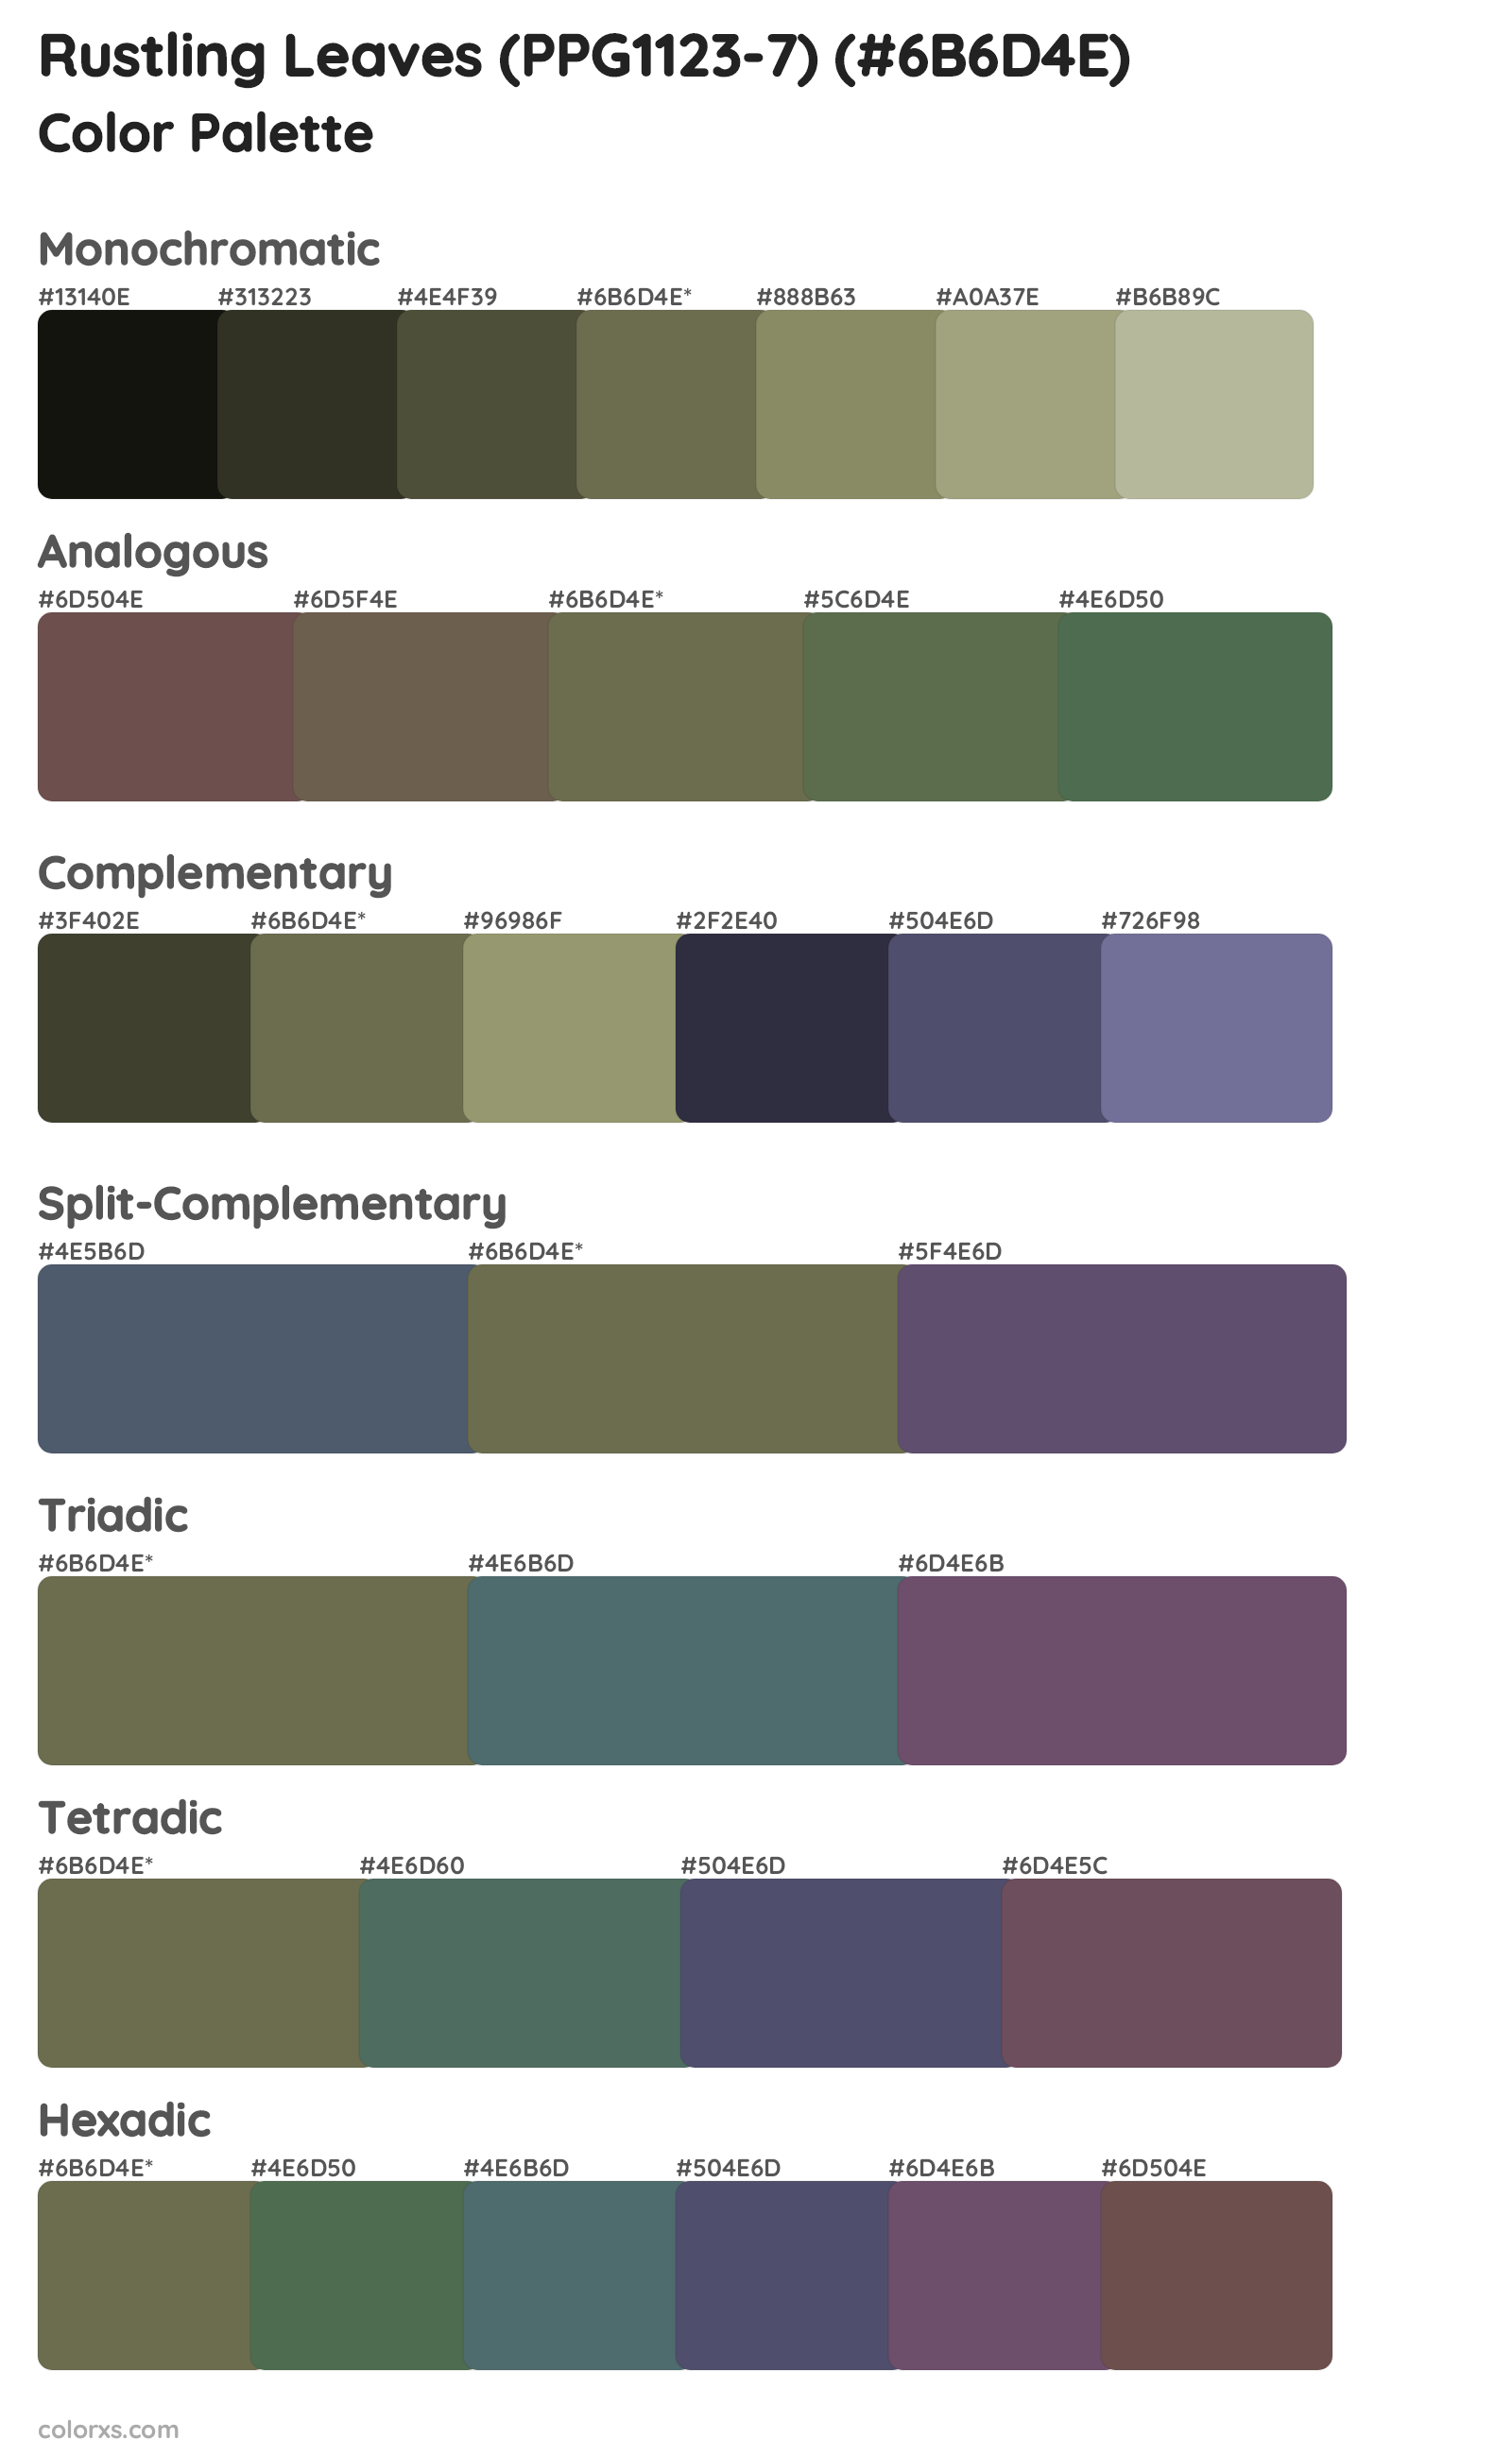 Rustling Leaves (PPG1123-7) Color Scheme Palettes